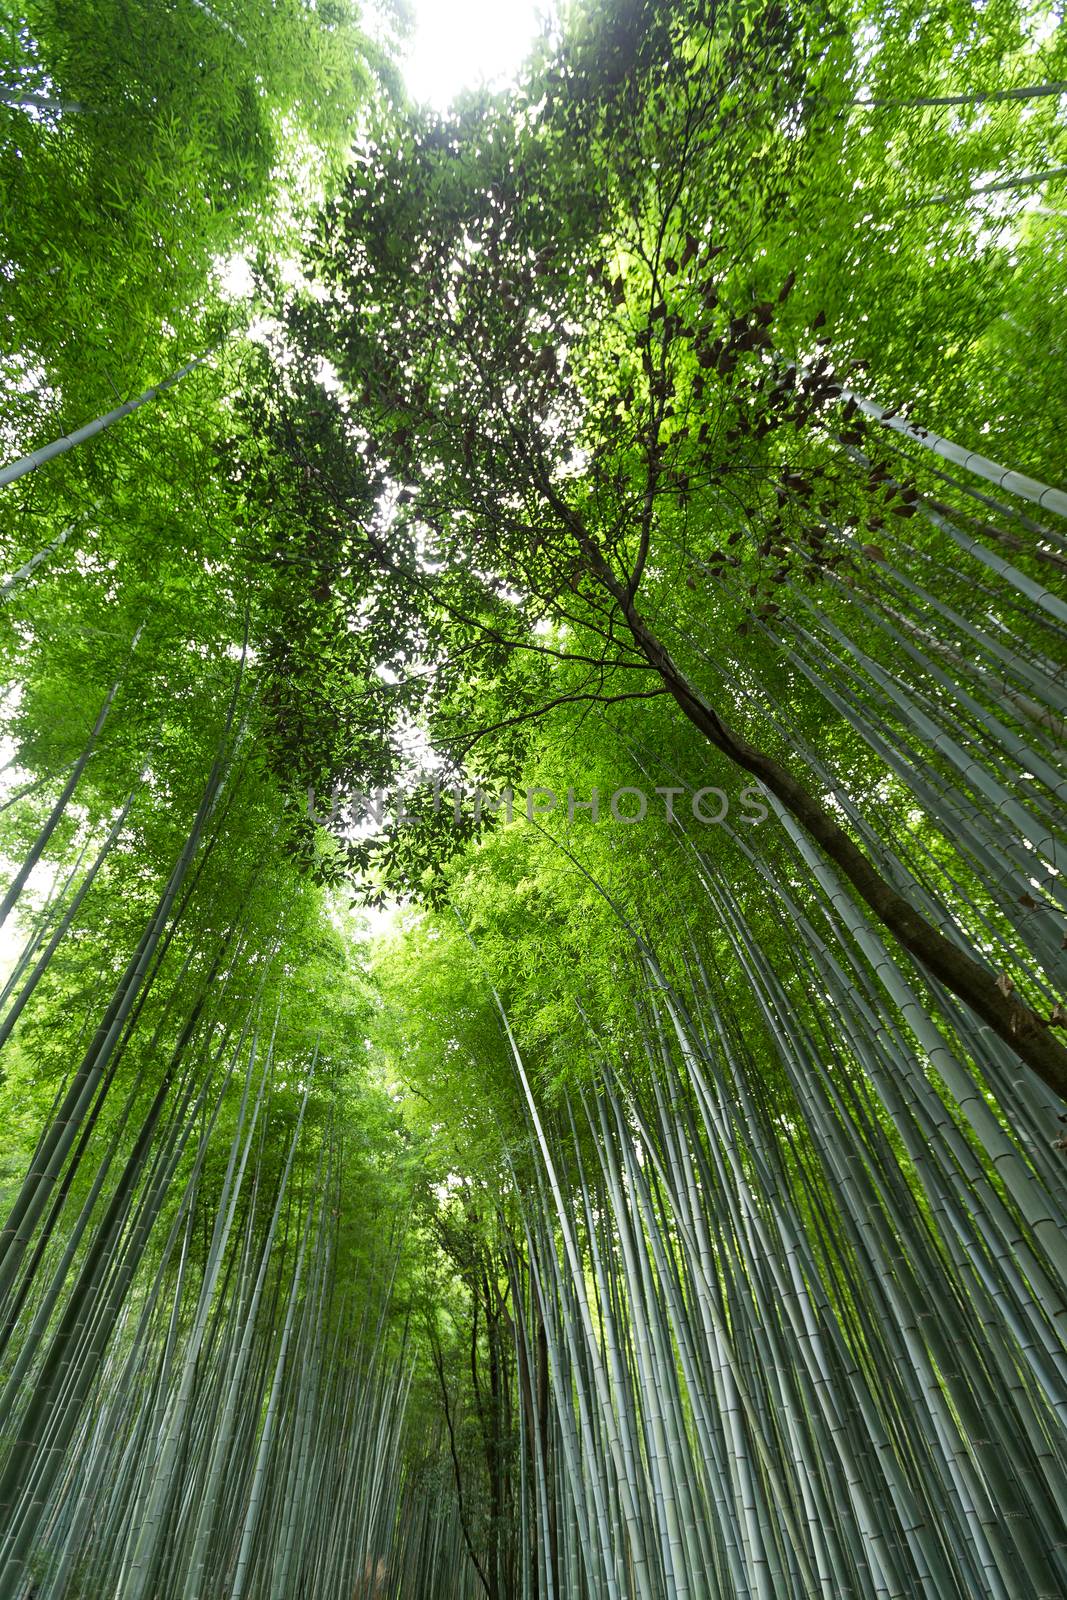 Bamboo forest at Arashiyama in Kyoto